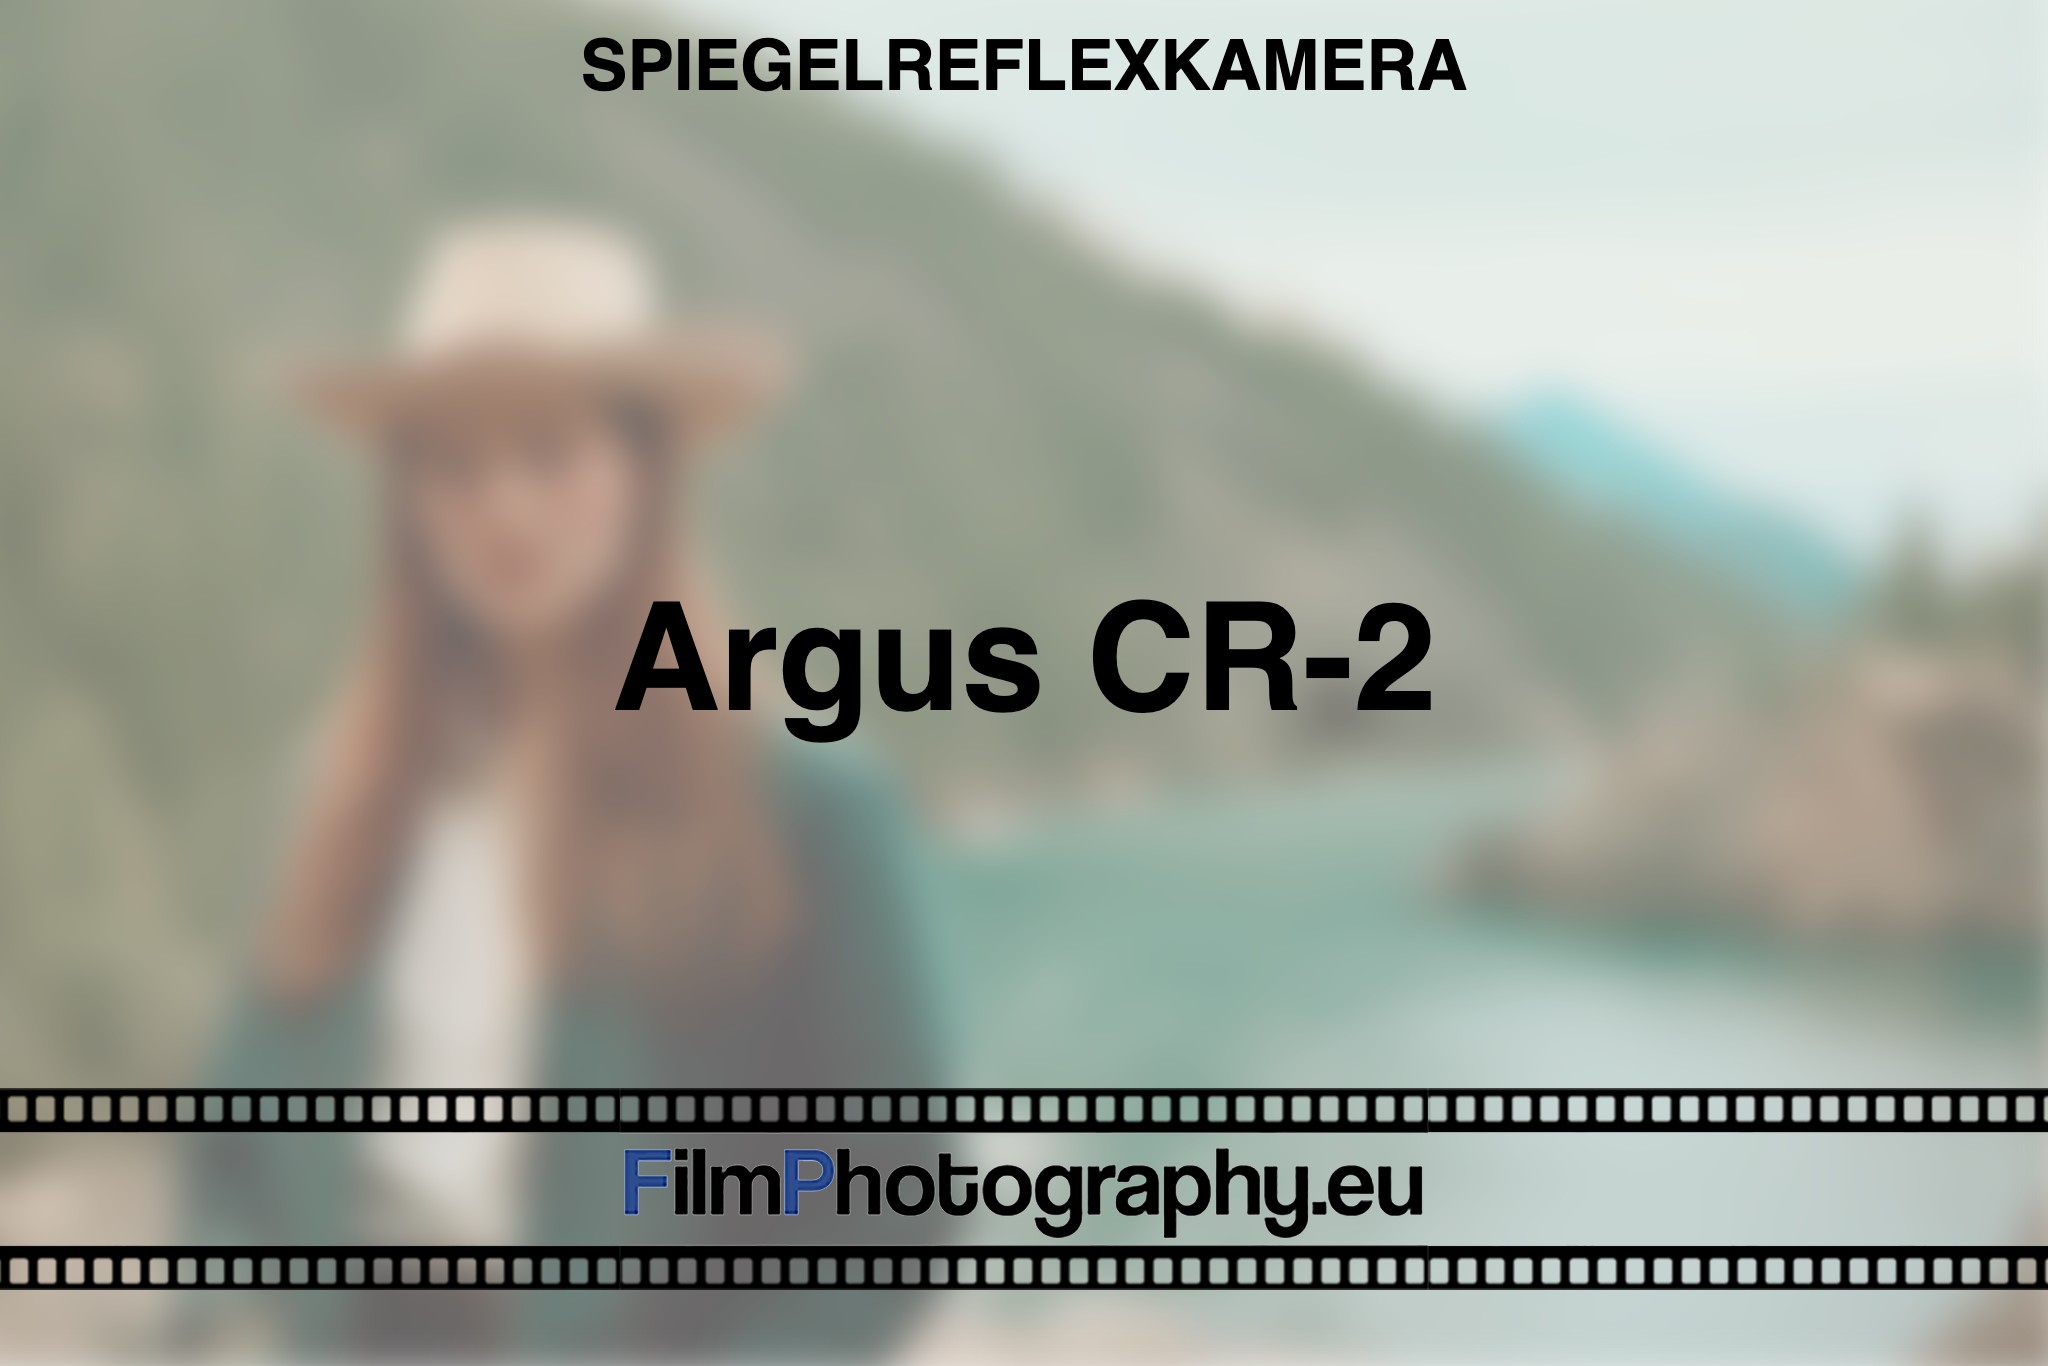 argus-cr-2-spiegelreflexkamera-bnv